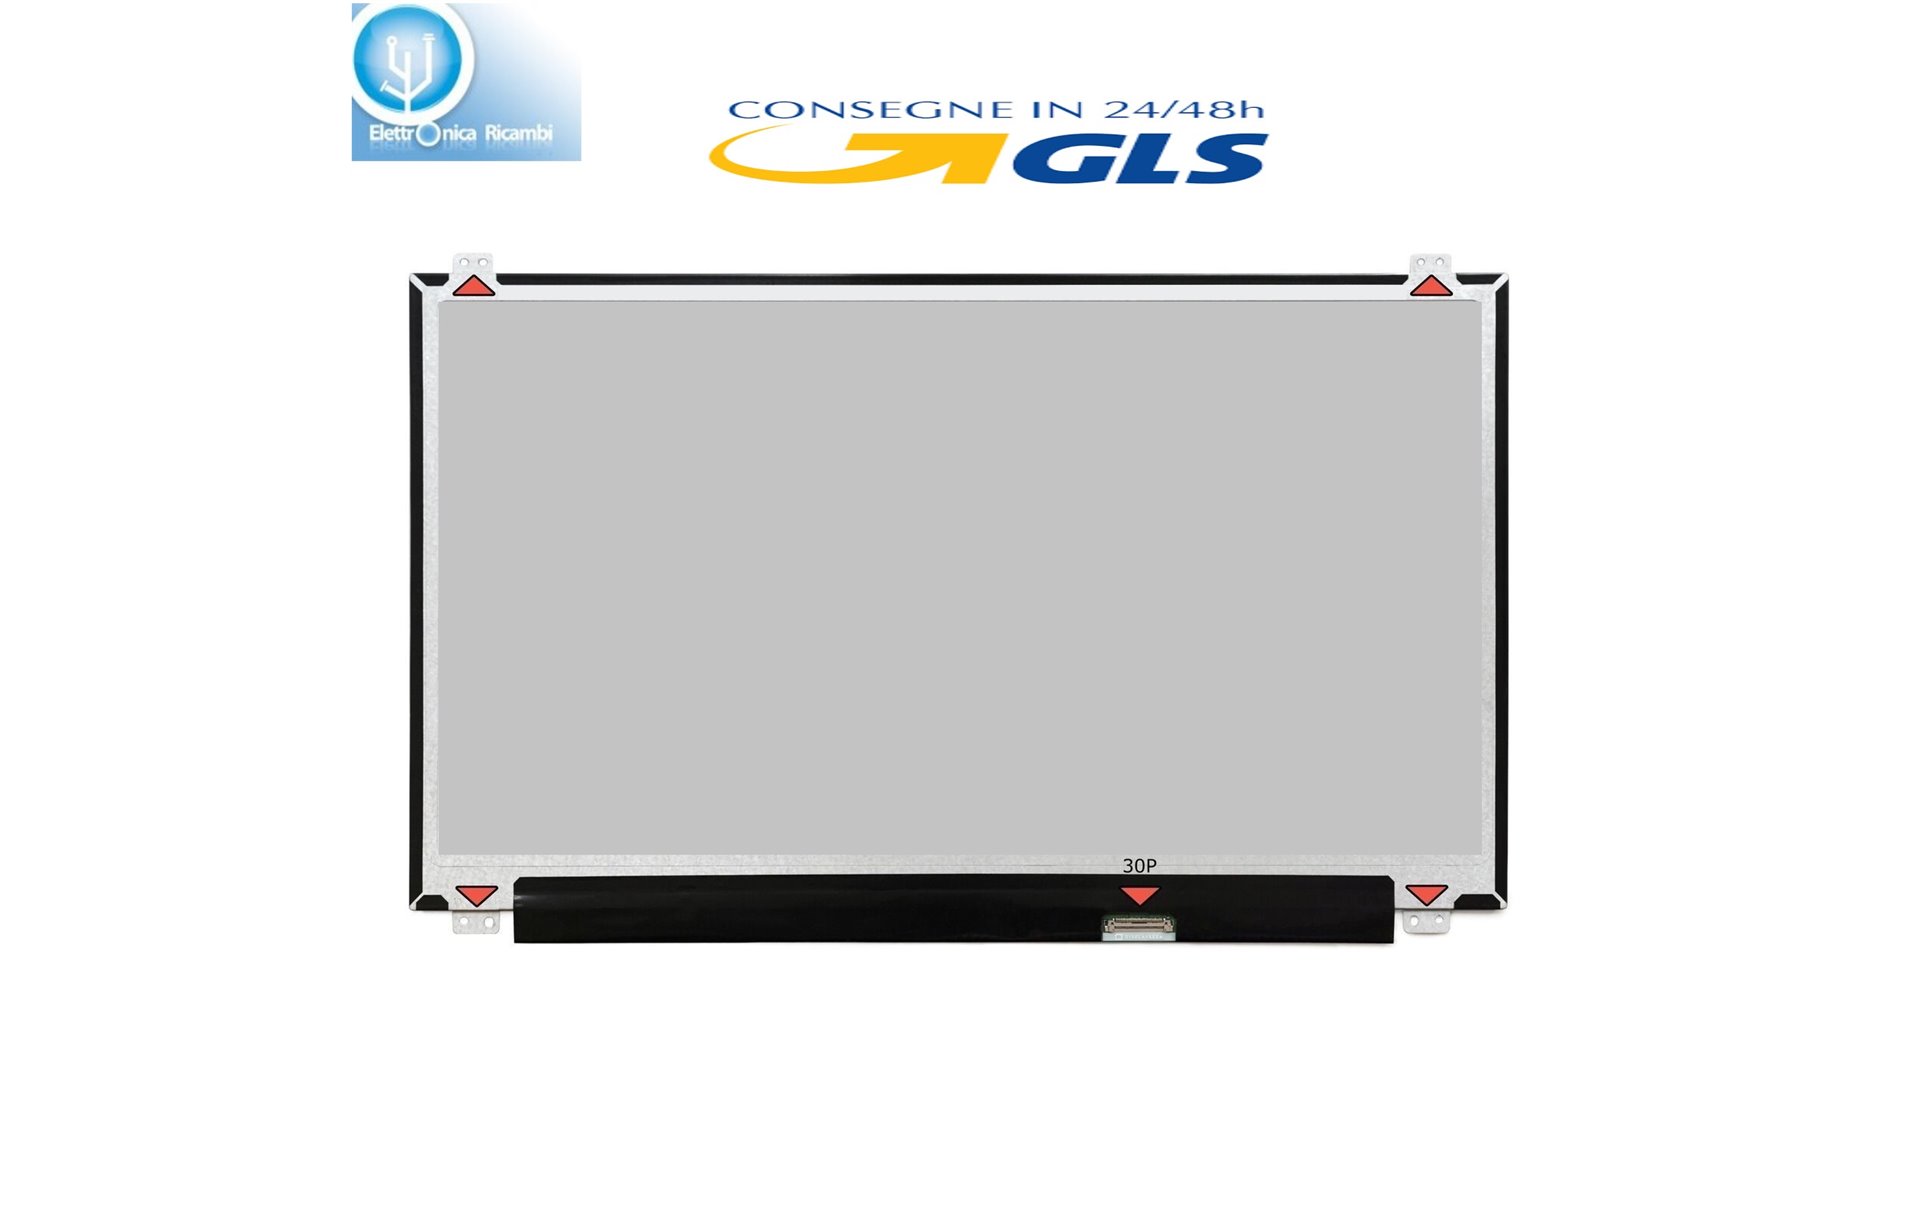 Display LCD HP ENVY 15-1209WM 15,6 LED 1366X768 30 PIN